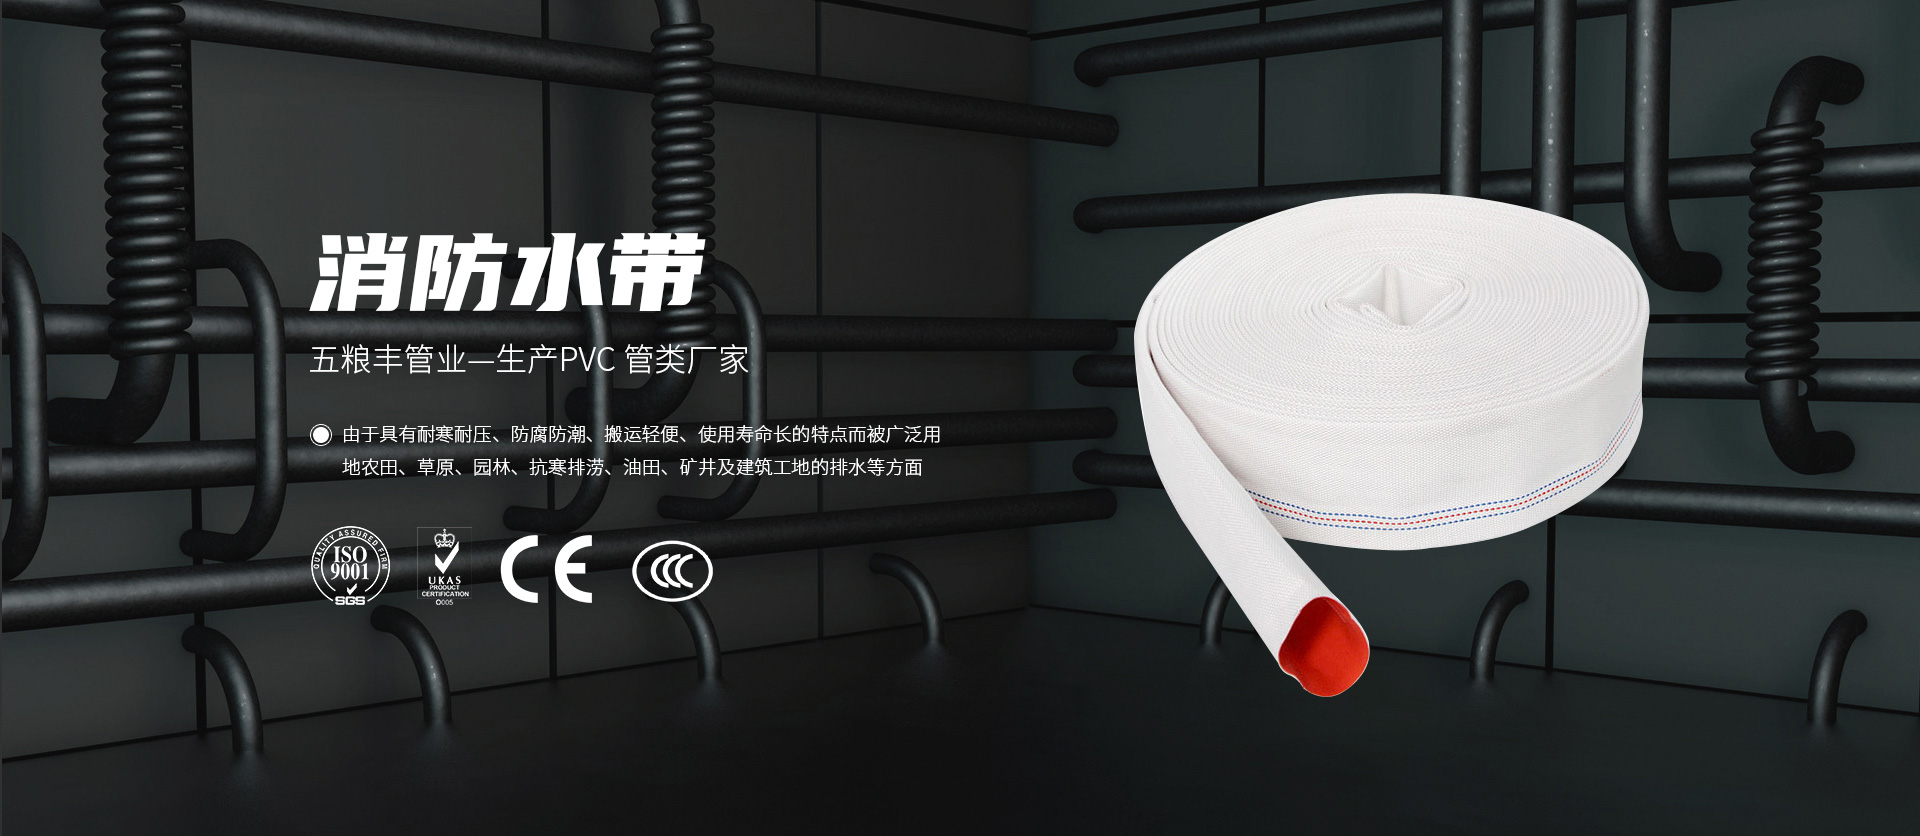 Zhejiang Wuliangfeng Pipe Industry Co., Ltd